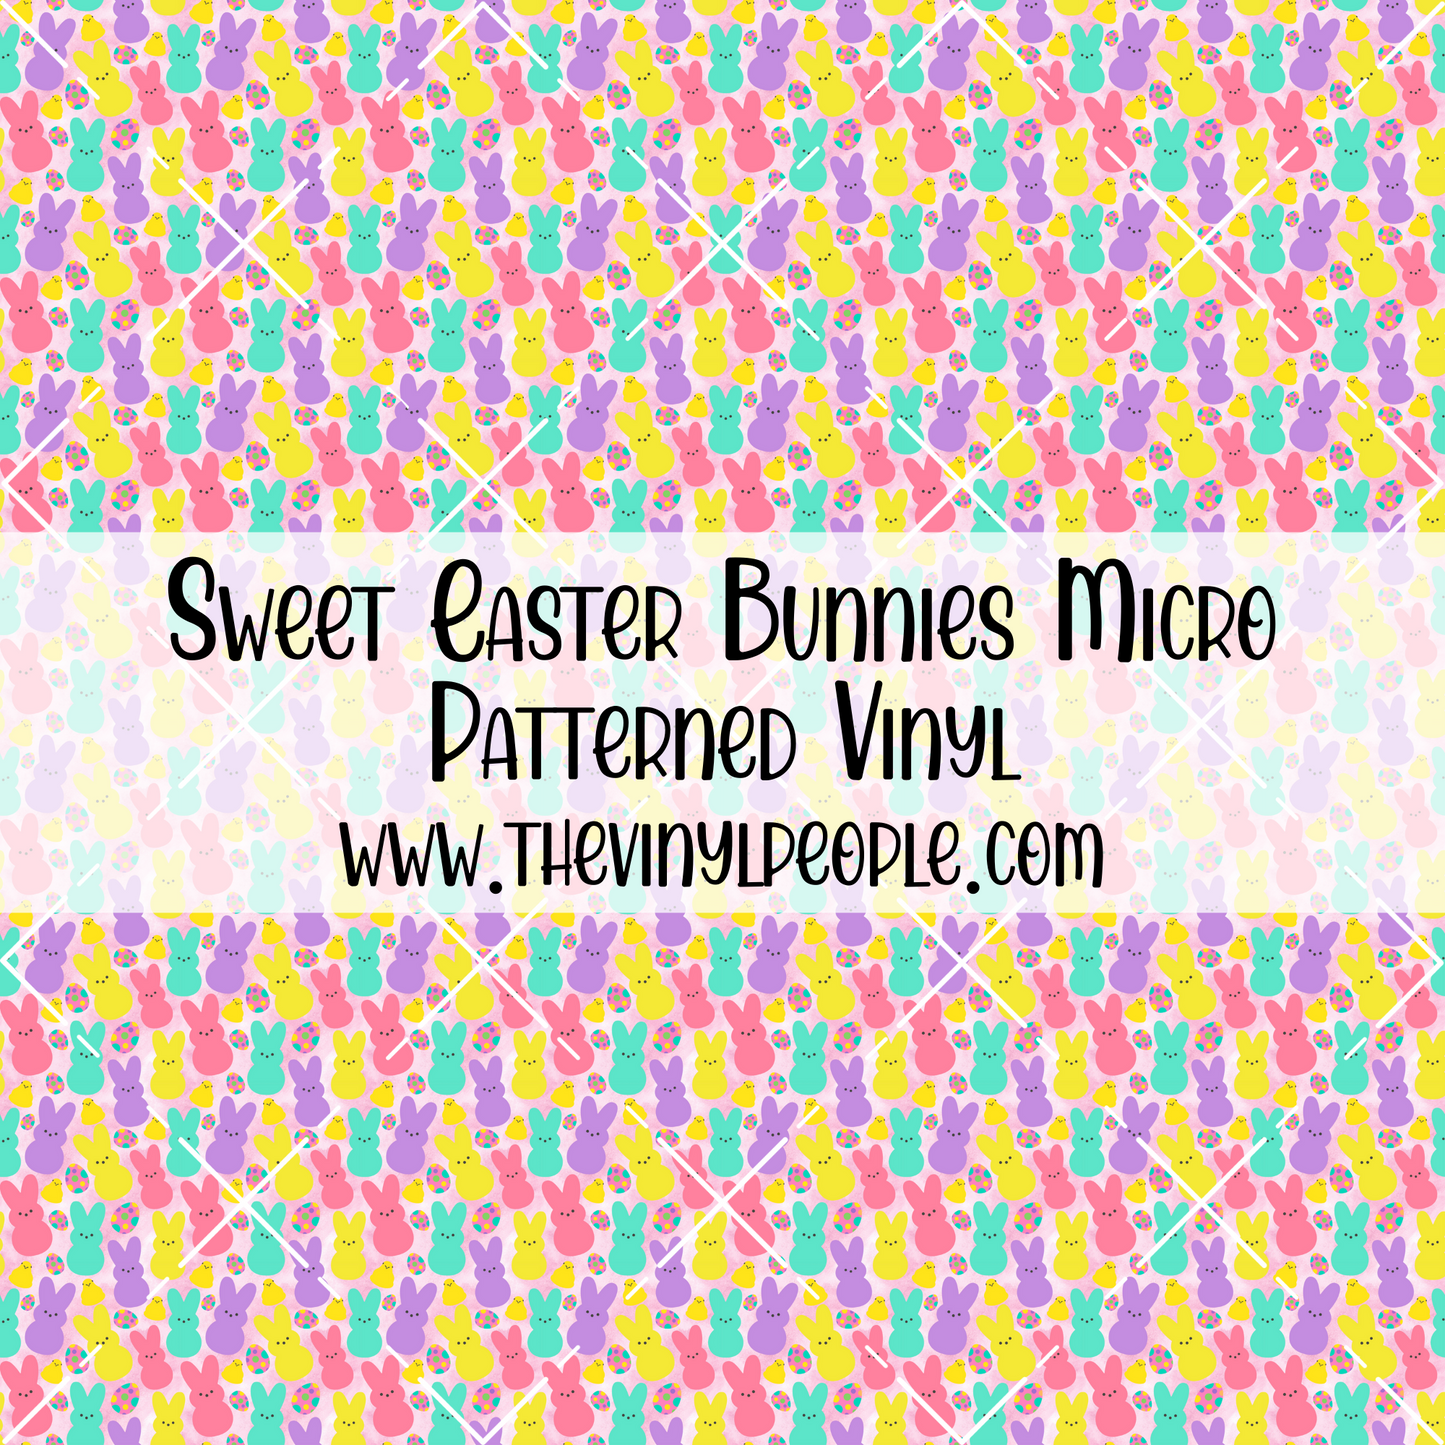 Sweet Easter Bunnies Patterned Vinyl